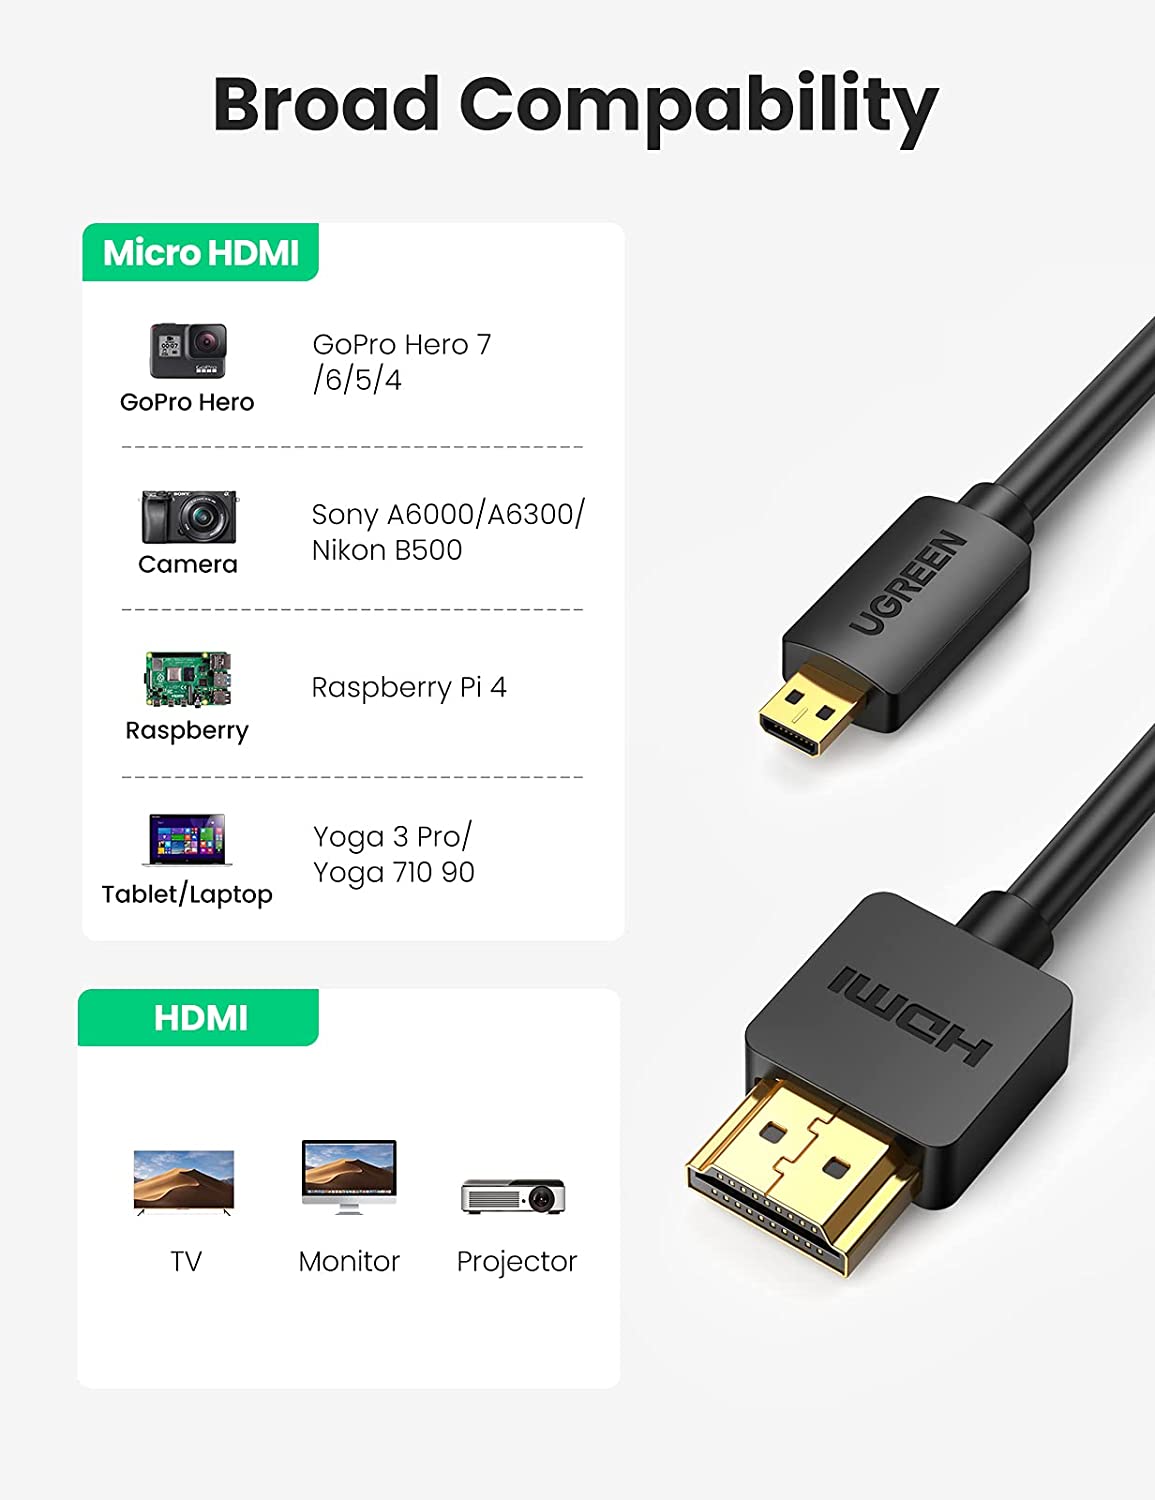 Cáp Micro HDMI to HDMI dài 2M Ugreen 40507